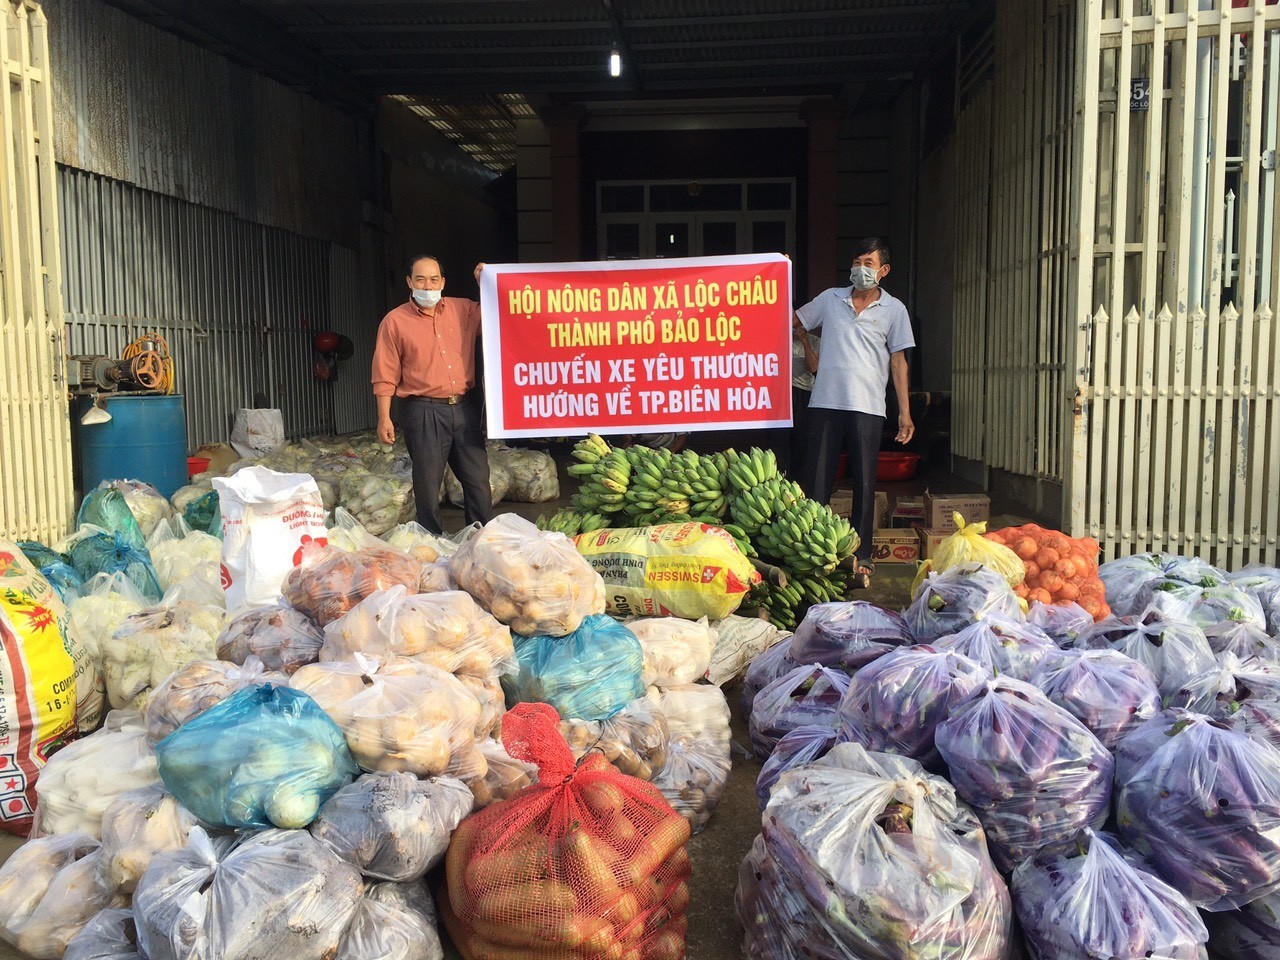 Hội nông dân tỉnh Lâm Đồng: Gửi tới vùng dịch Covid-19 gần 300 tấn “rau yêu thương” - Ảnh 1.